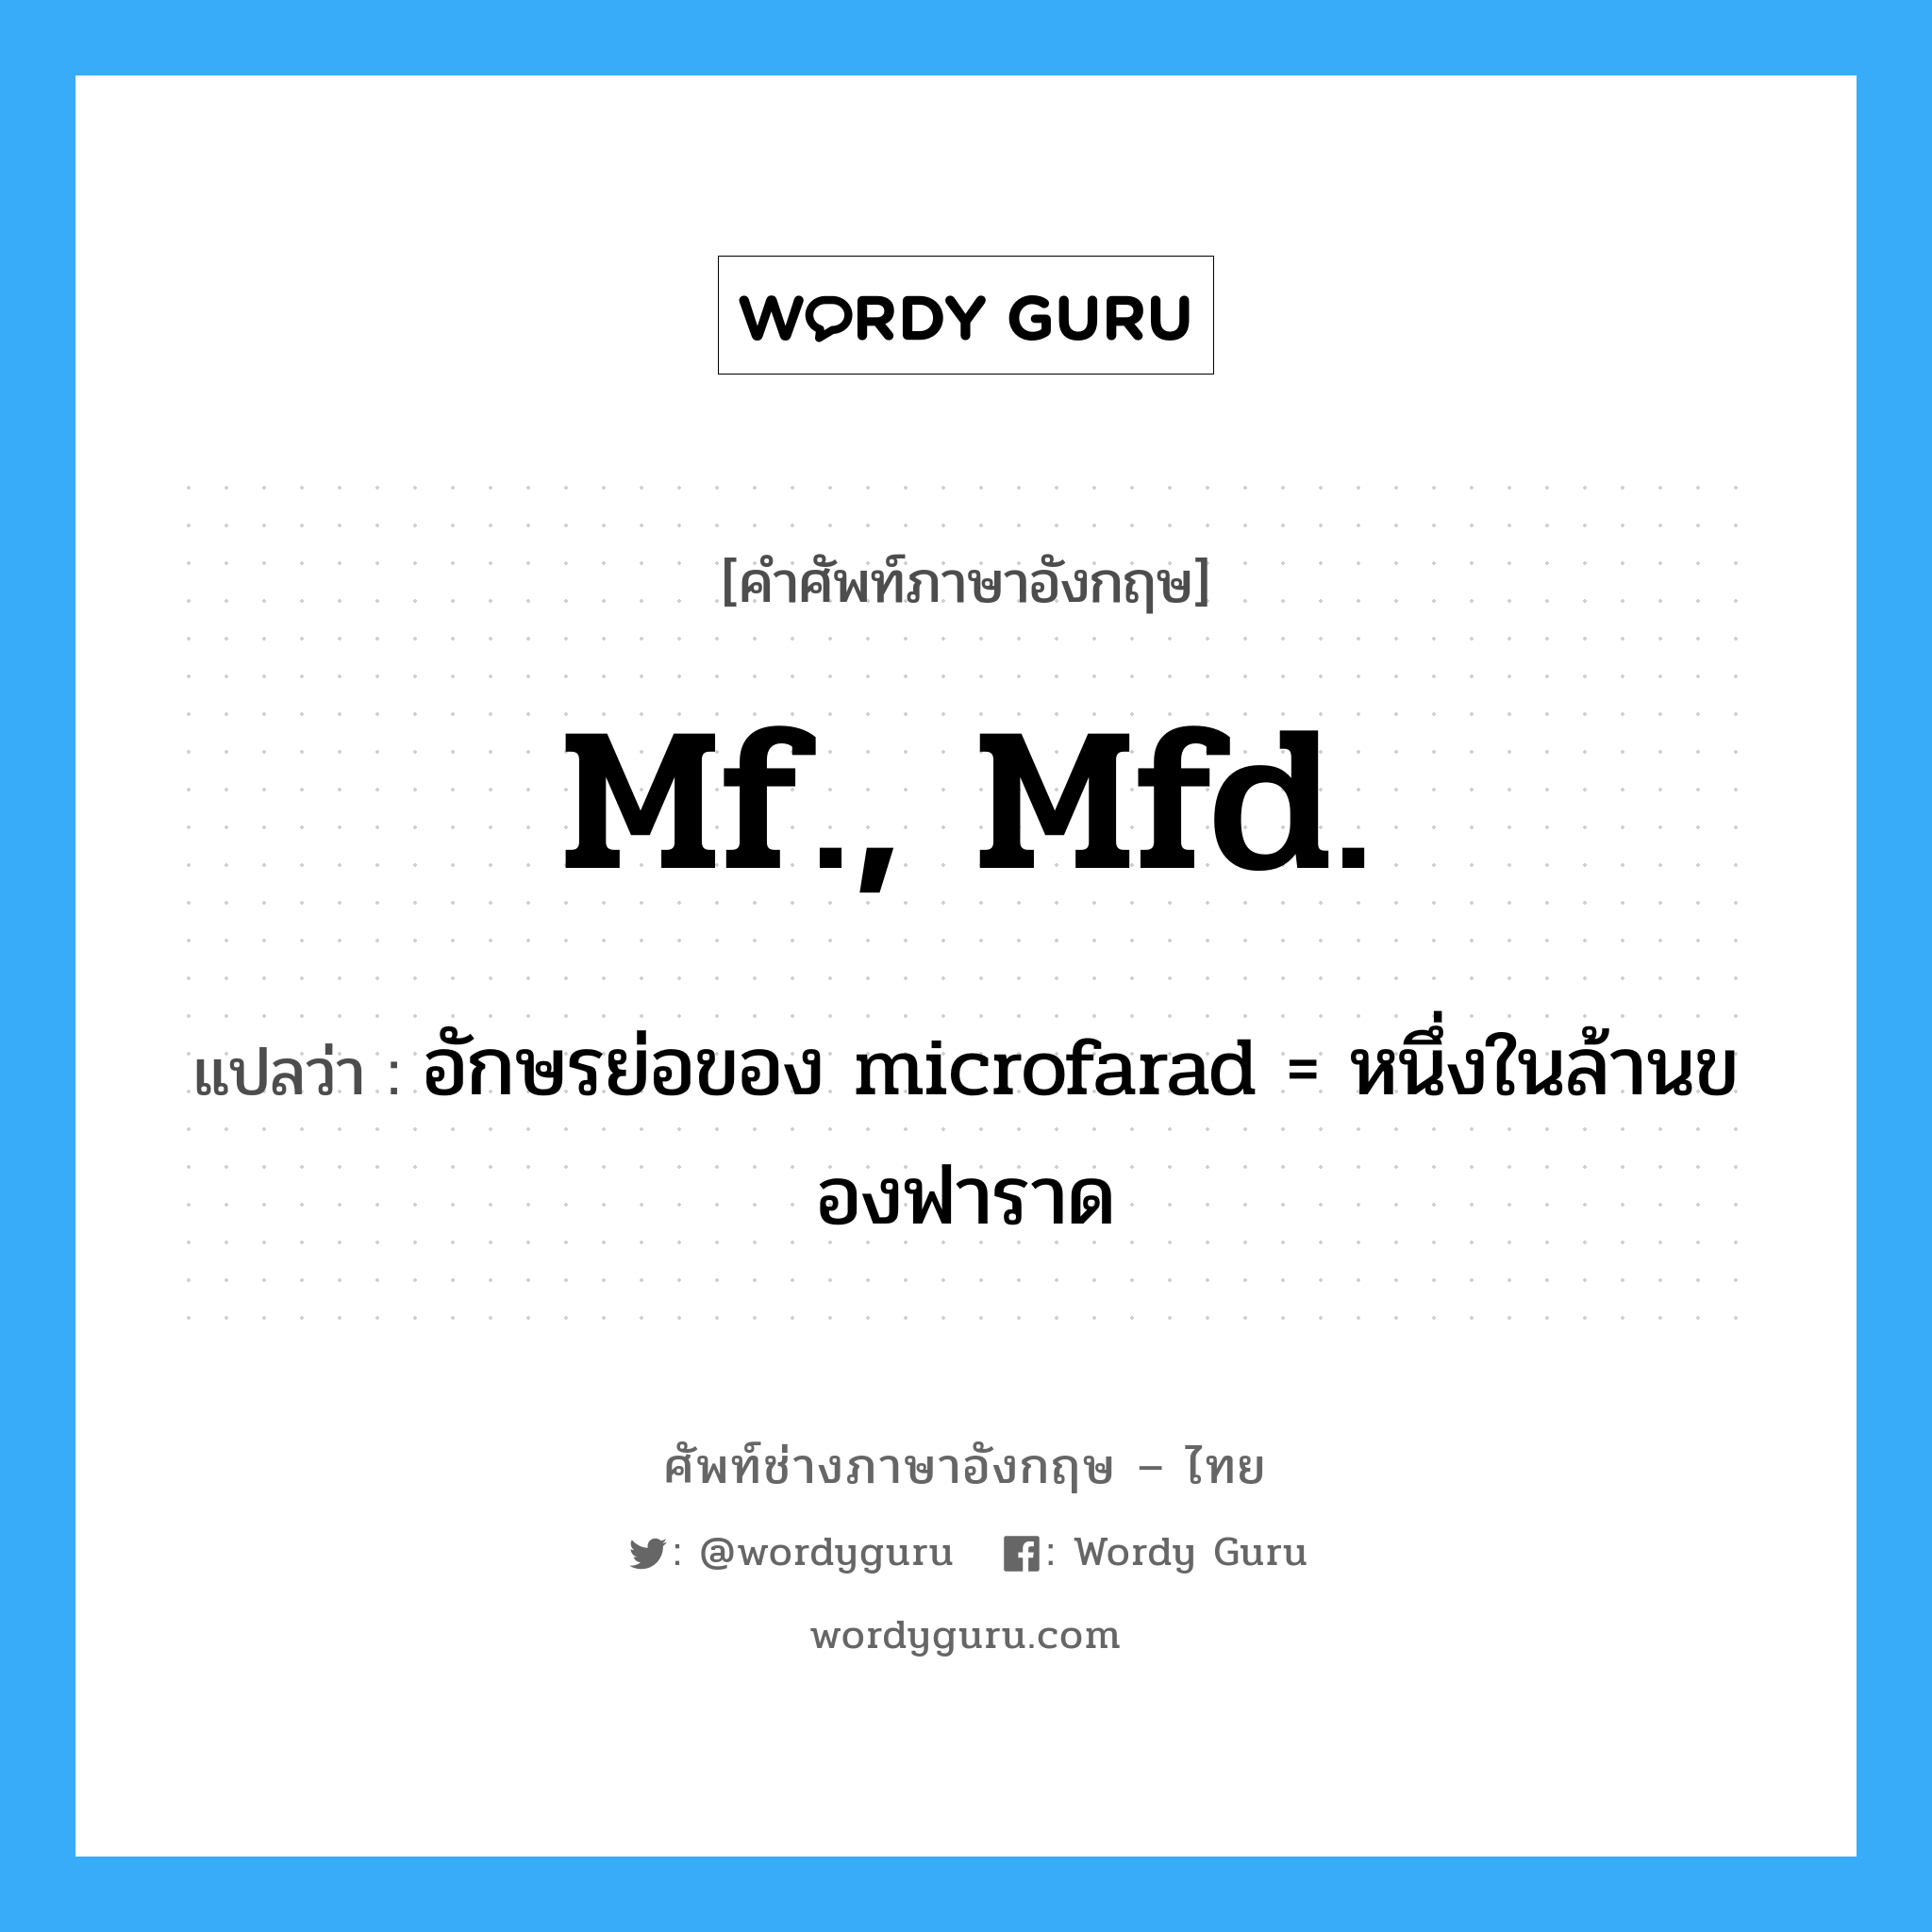 อักษรย่อของ microfarad = หนึ่งในล้านของฟาราด ภาษาอังกฤษ?, คำศัพท์ช่างภาษาอังกฤษ - ไทย อักษรย่อของ microfarad = หนึ่งในล้านของฟาราด คำศัพท์ภาษาอังกฤษ อักษรย่อของ microfarad = หนึ่งในล้านของฟาราด แปลว่า mf., mfd.